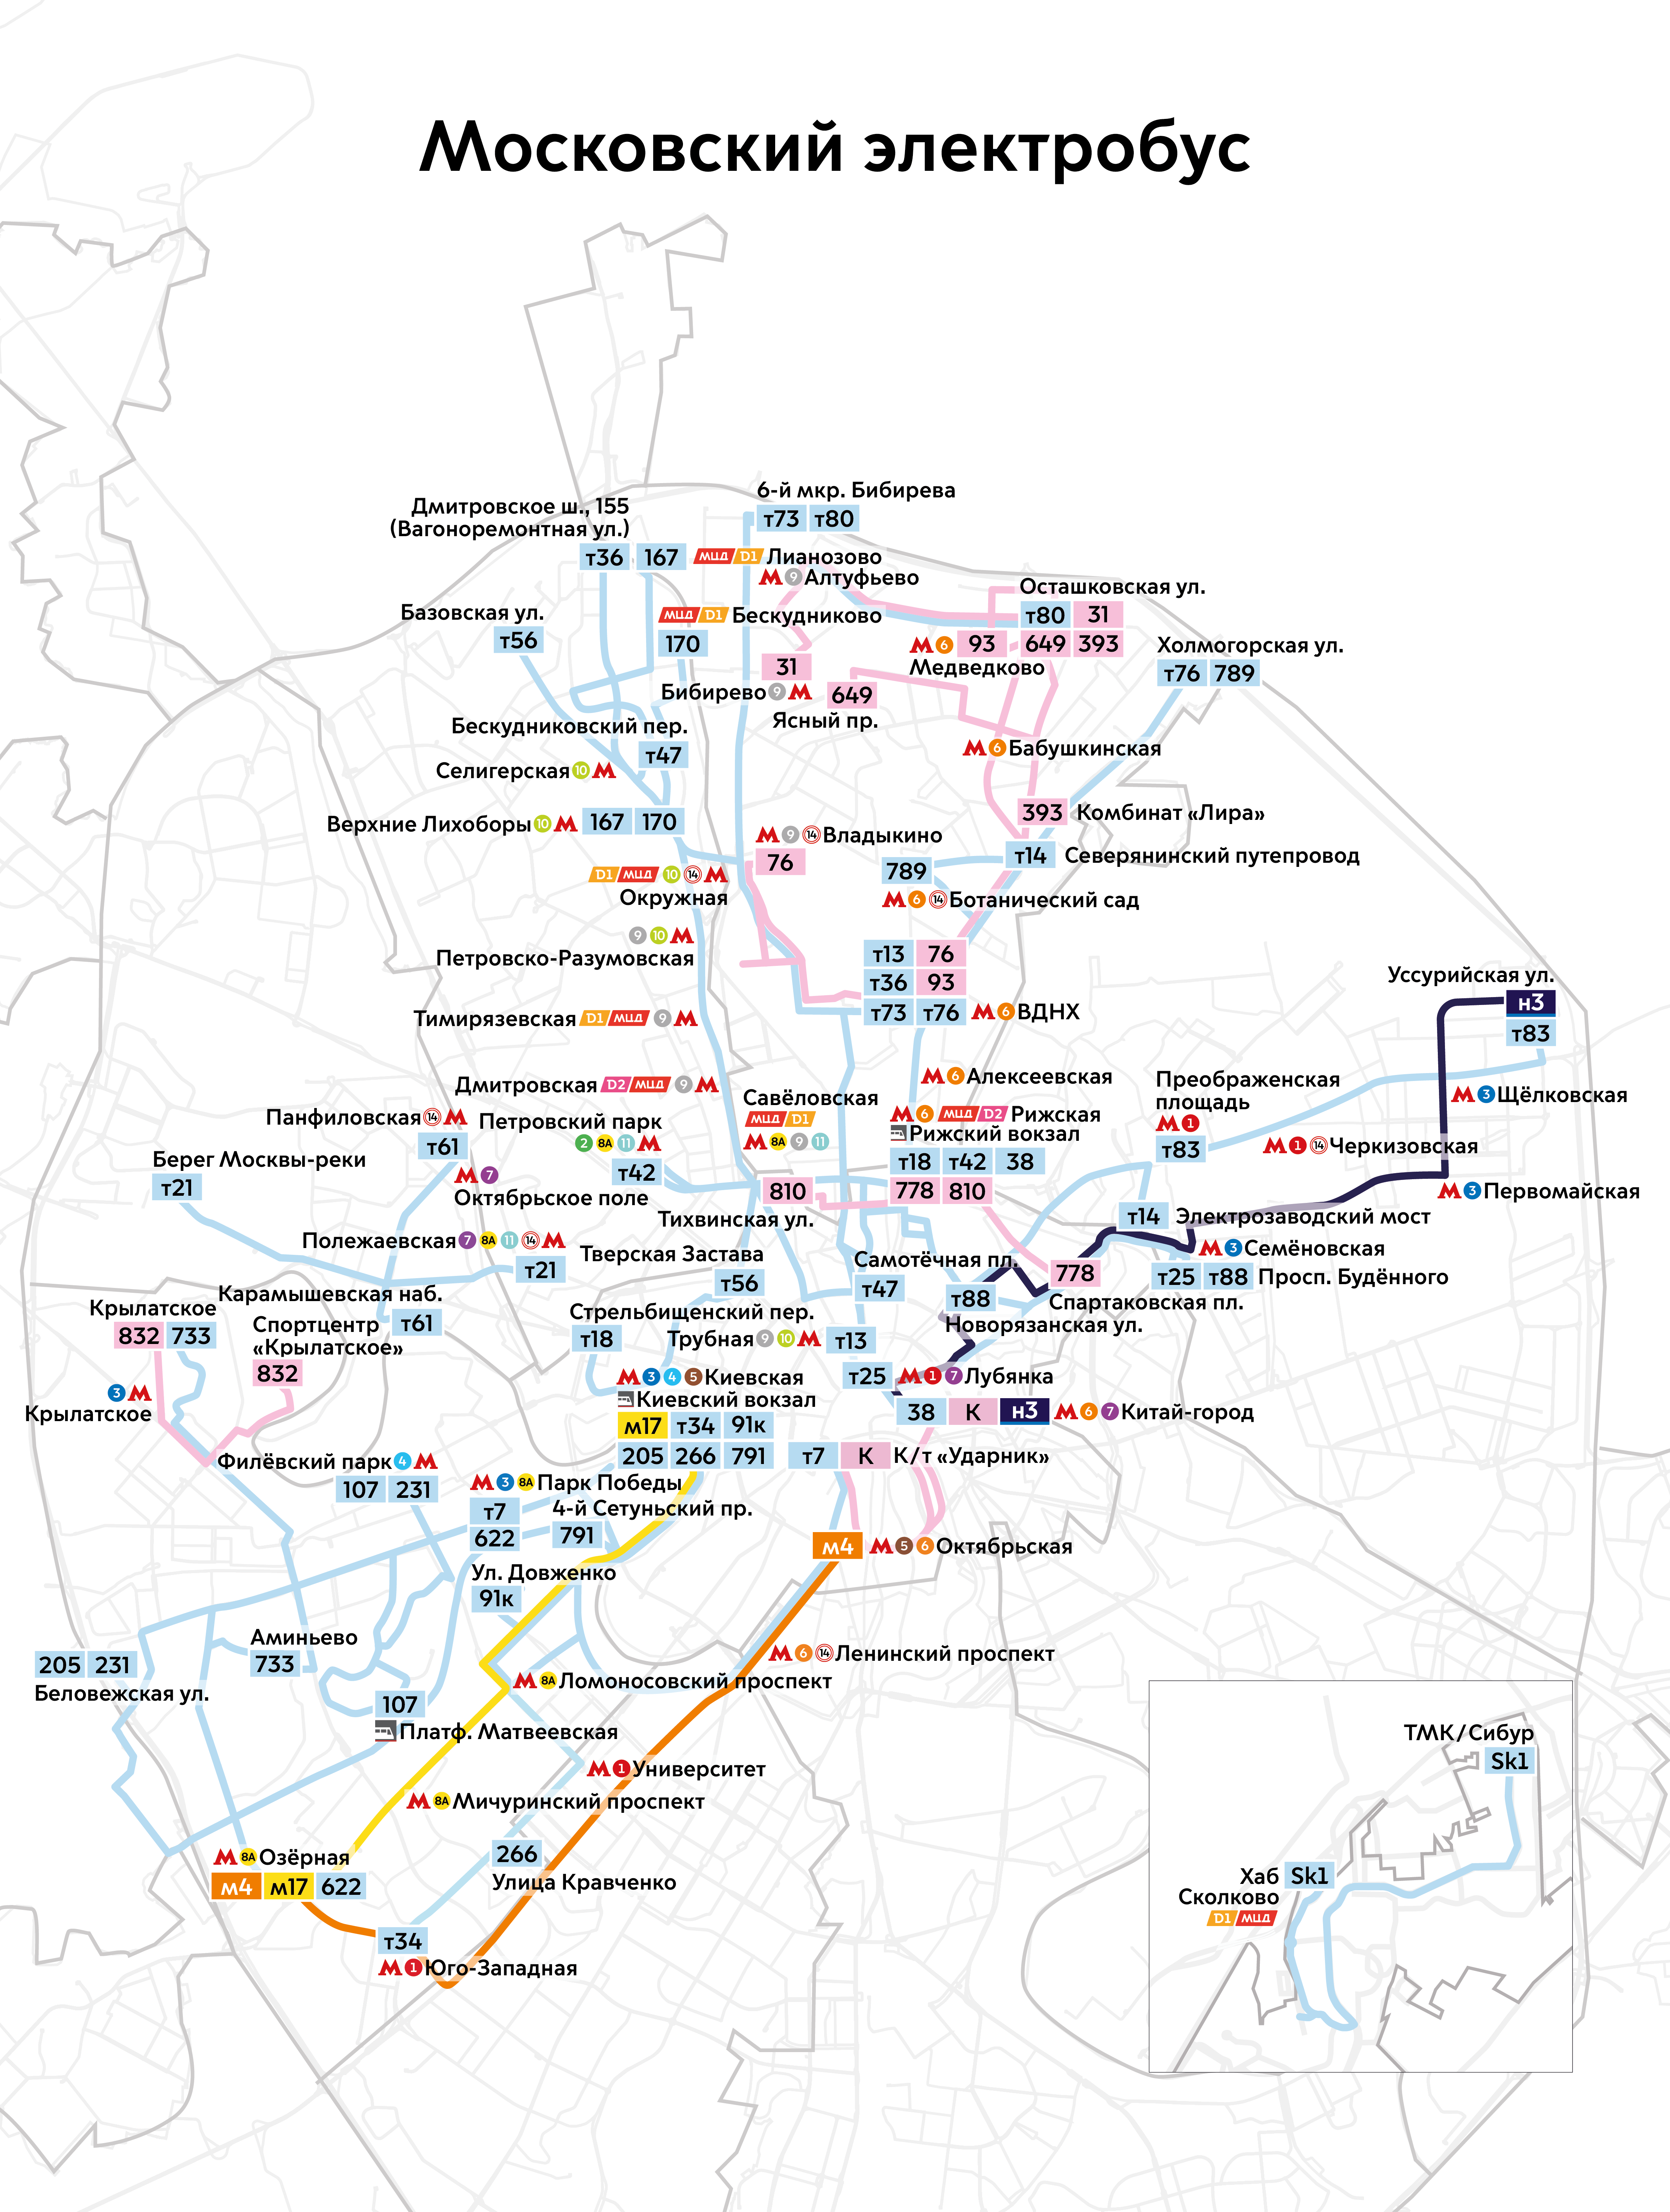 Moskau — Maps of Autonomous Electric Bus Lines